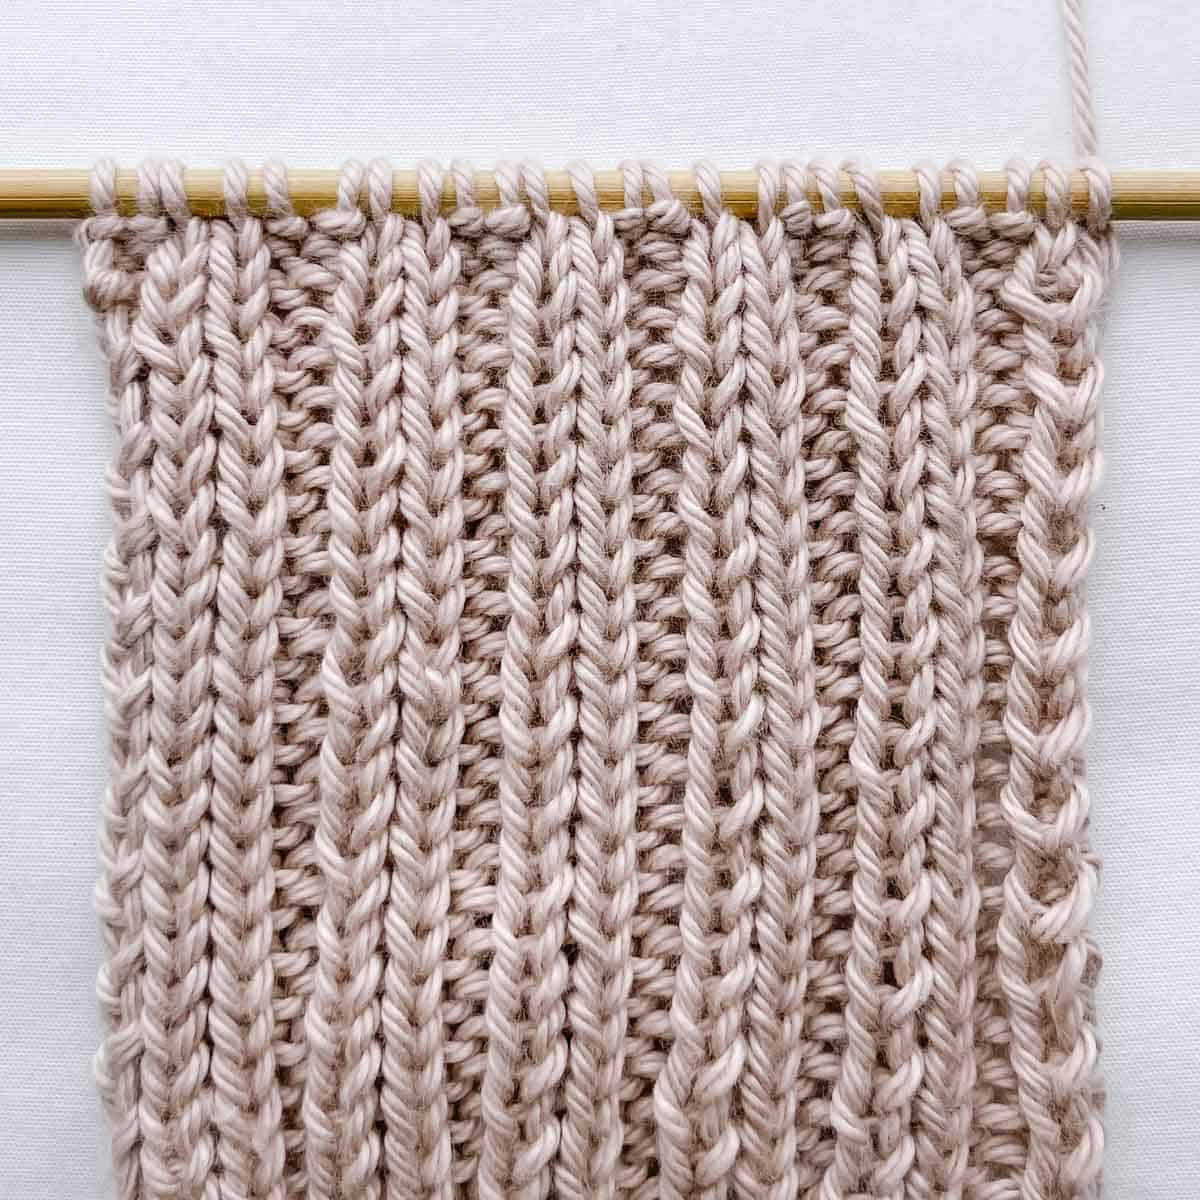 2 knit stitches x 2 purl stitches (2x2) ribbing.